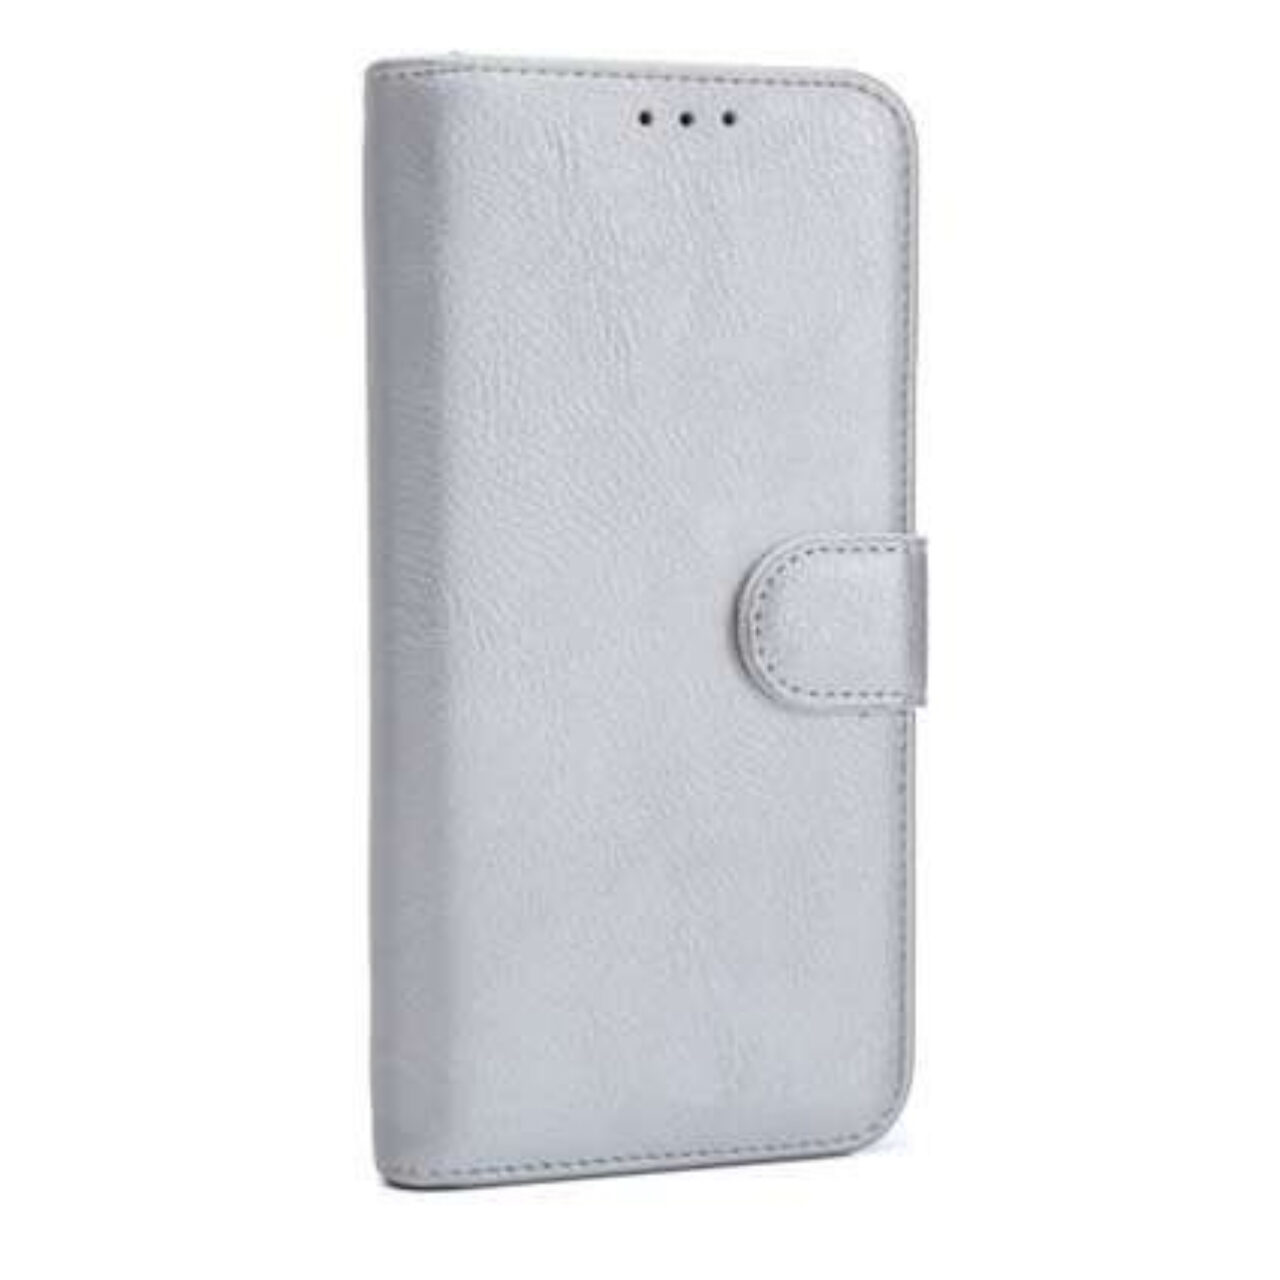 Boek zilver-hoesje-case-schutzhulle-coque-cover-smartphone-book case-boekmodel